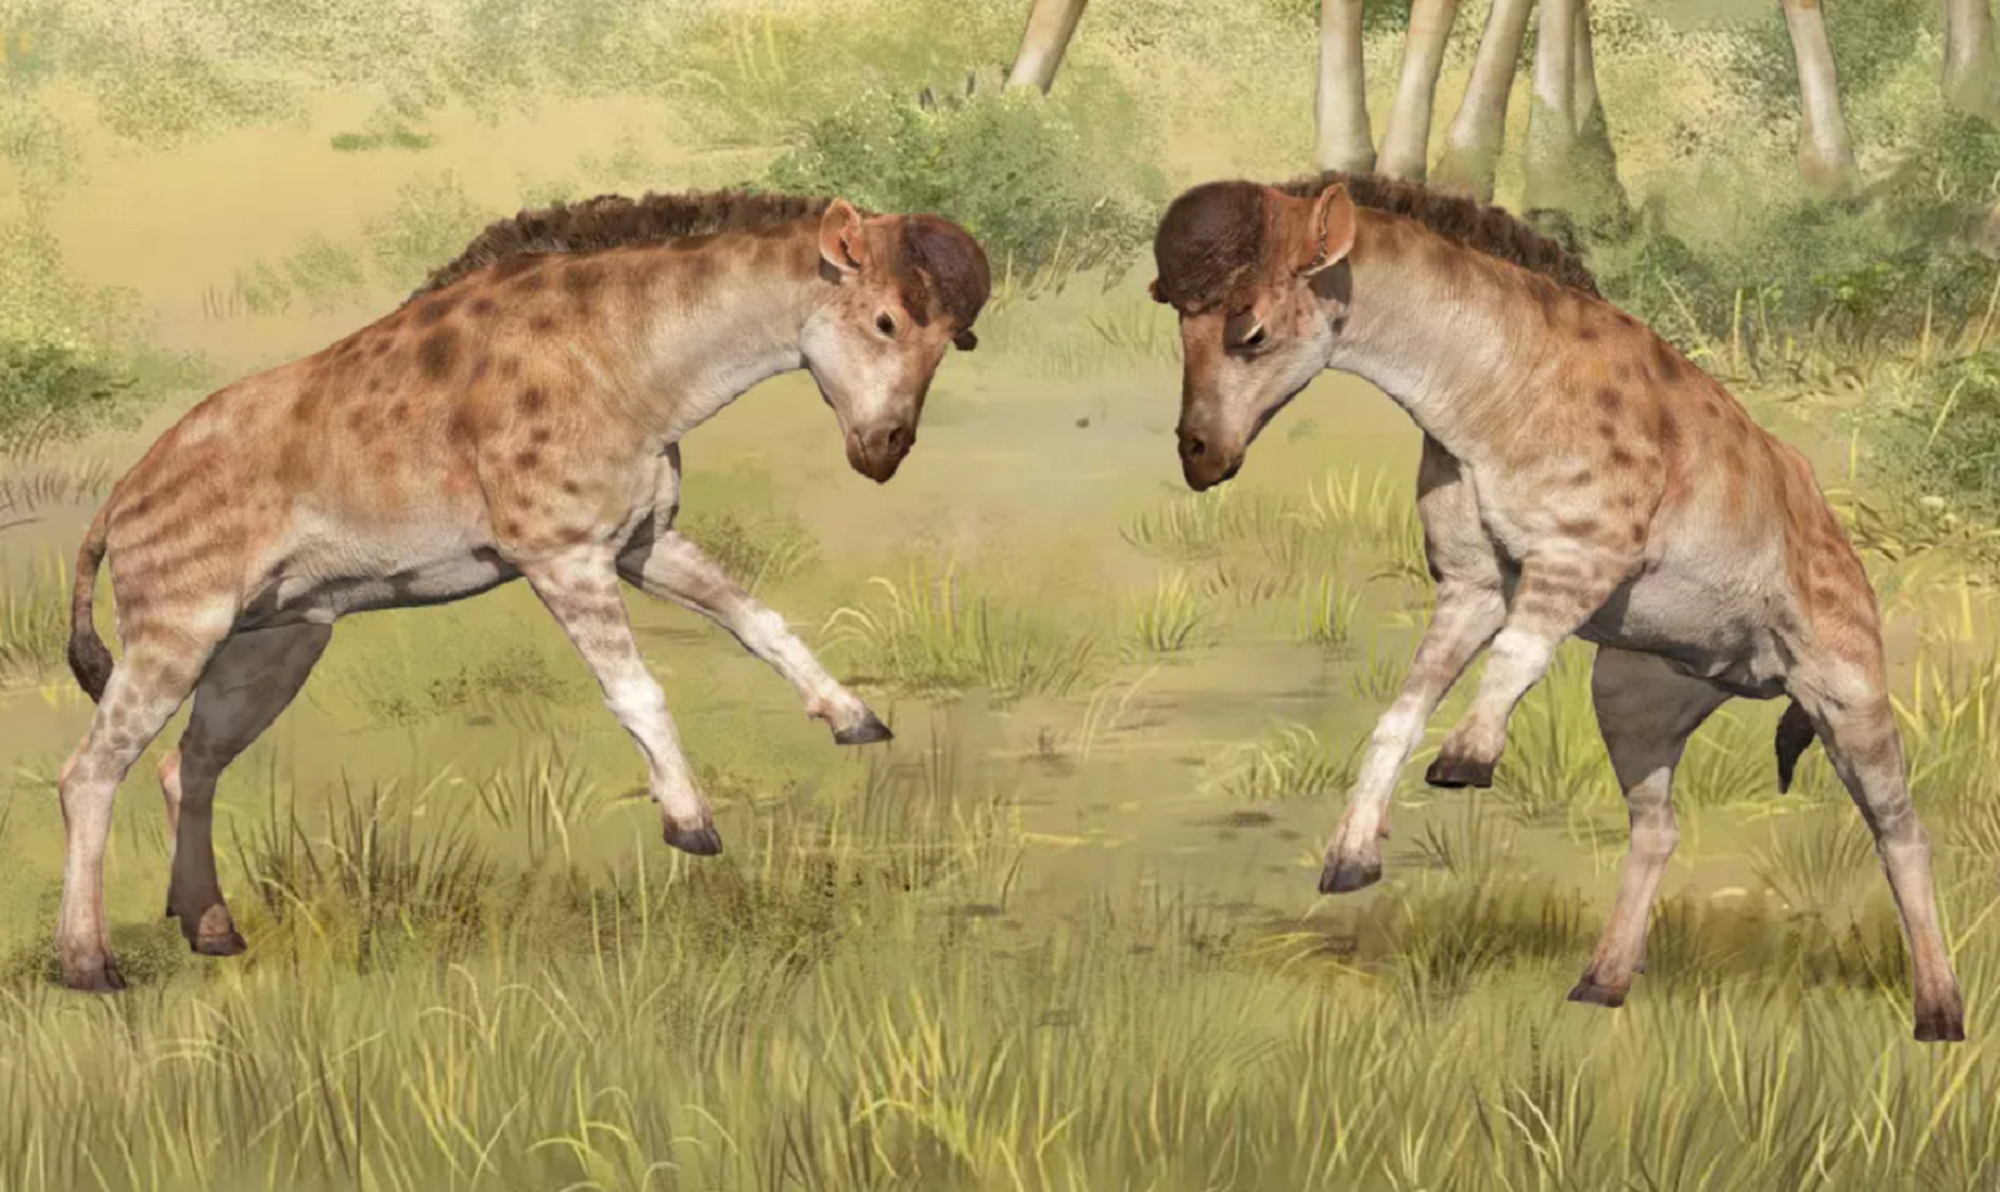 Before evolving long necks, giraffes headbutted each other for dominance